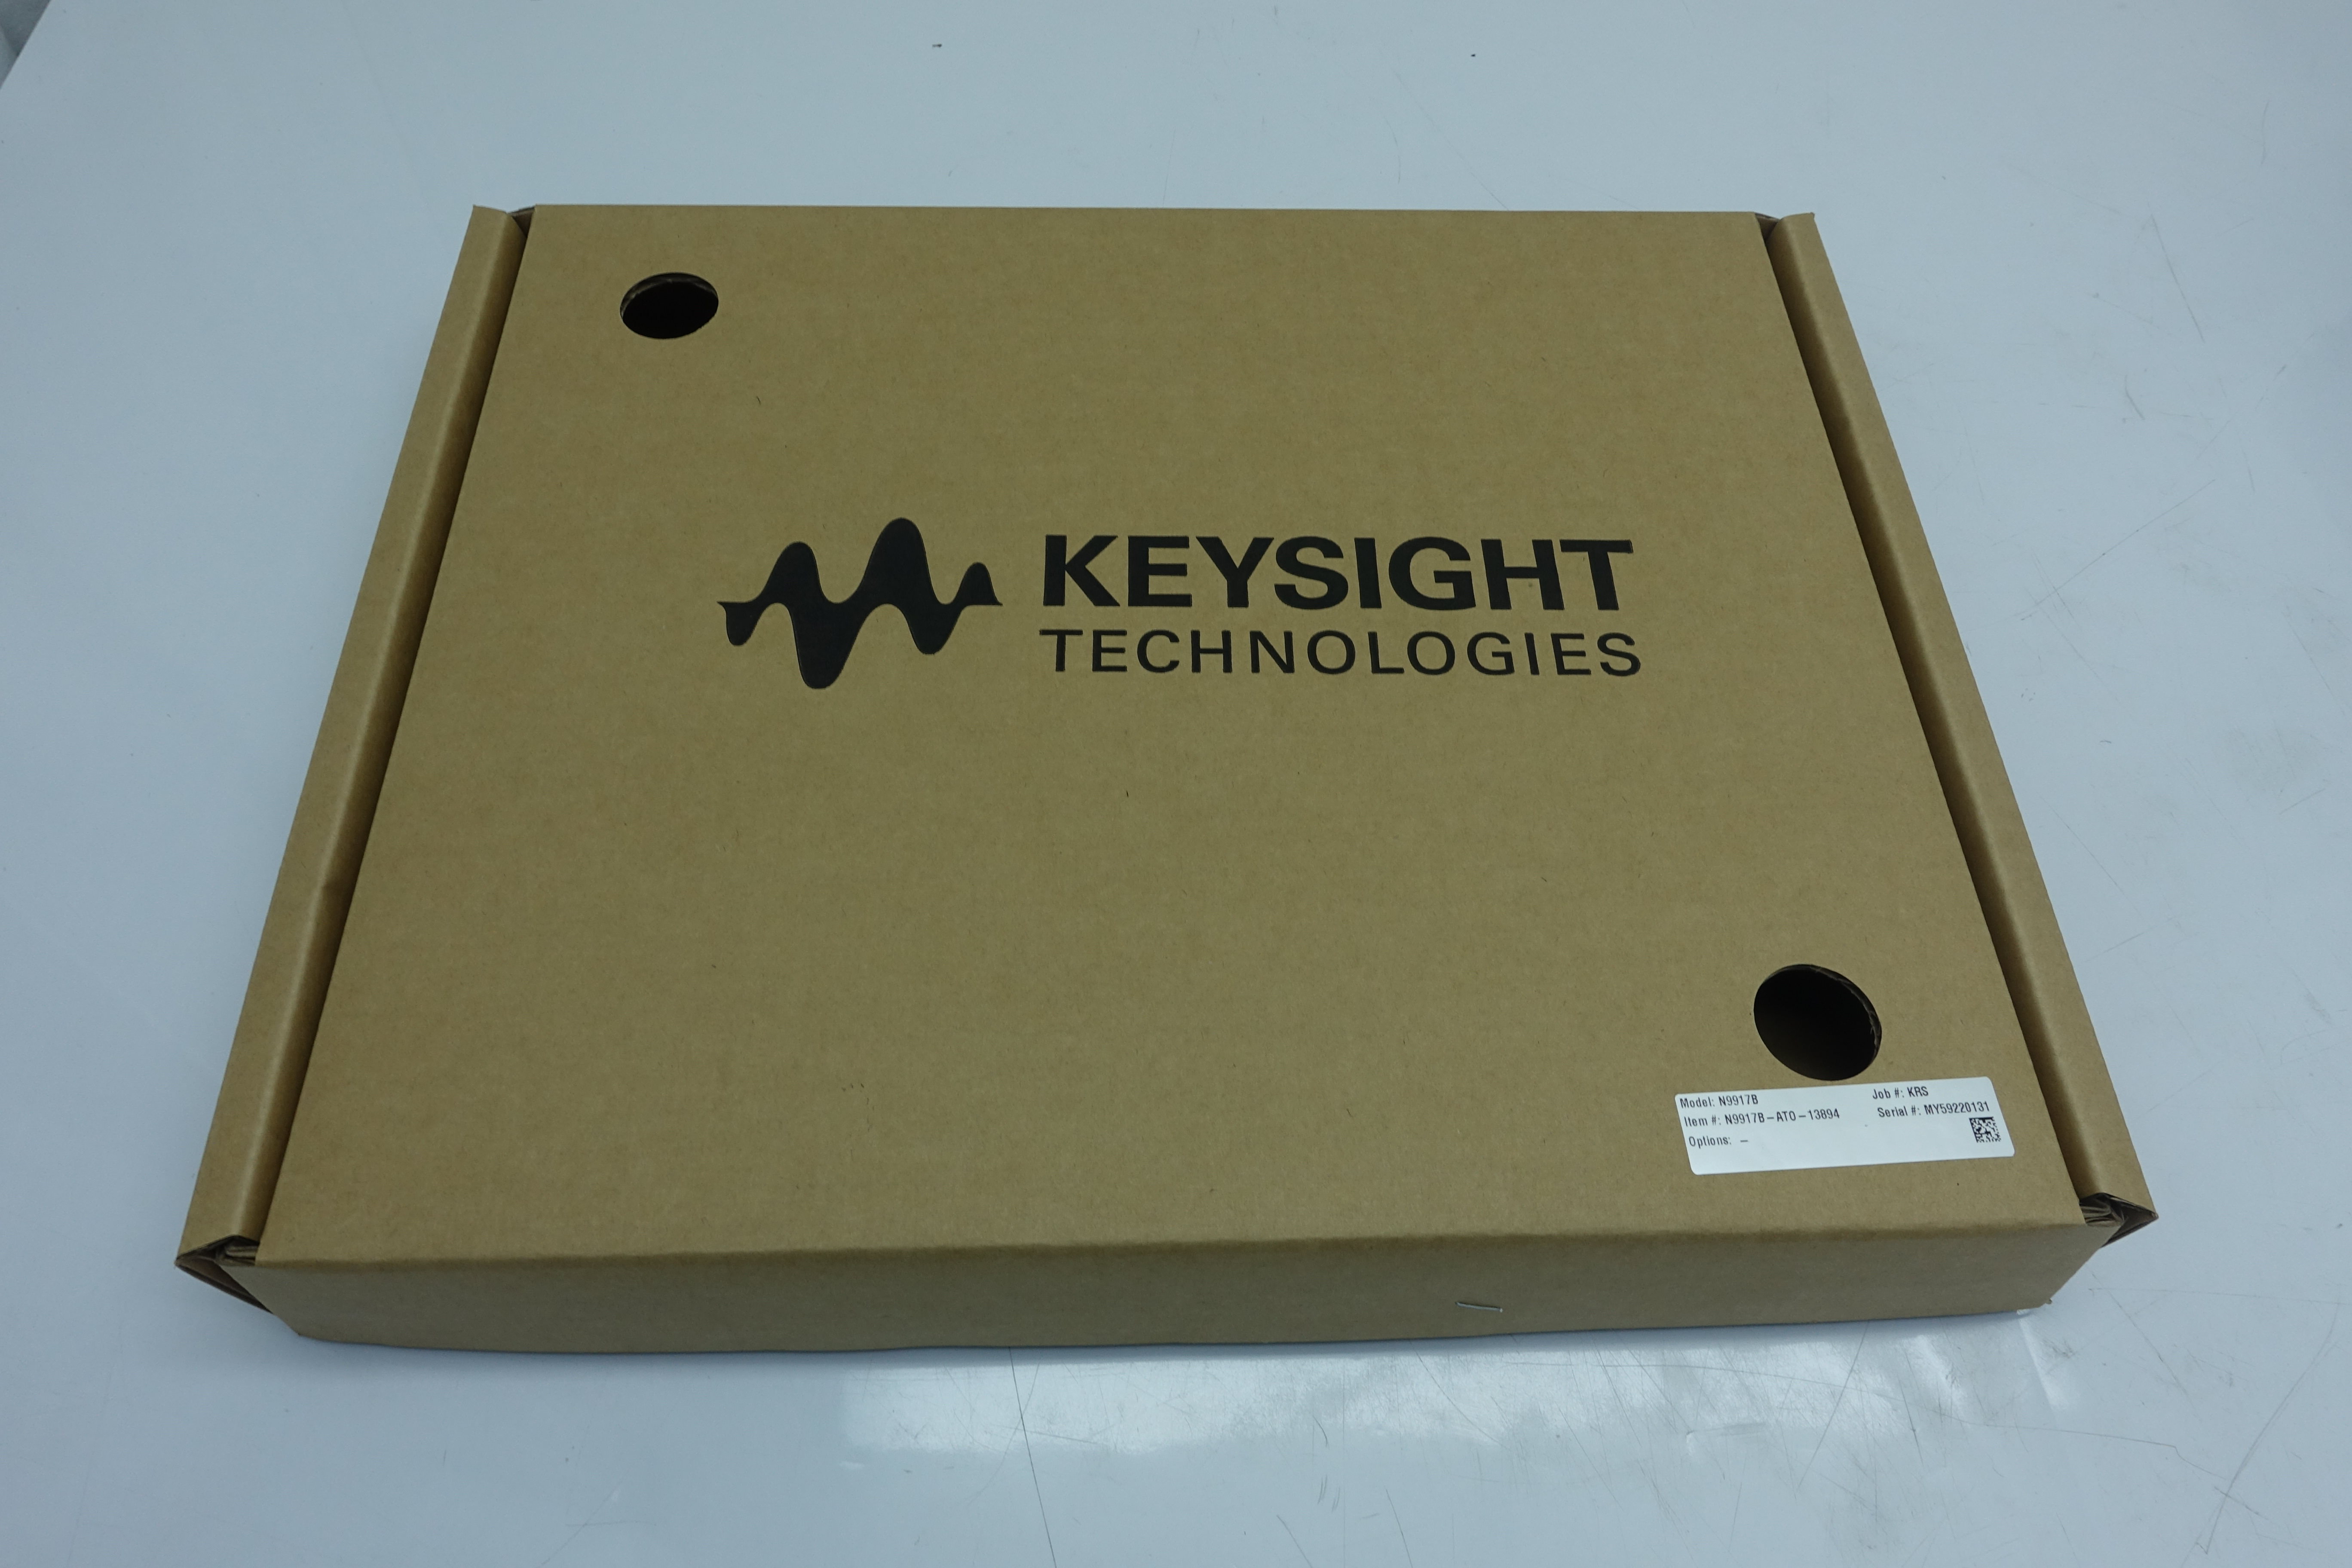 Keysight N9917B FieldFox Handheld Microwave Analyzer / 30 kHz to 18 GHz